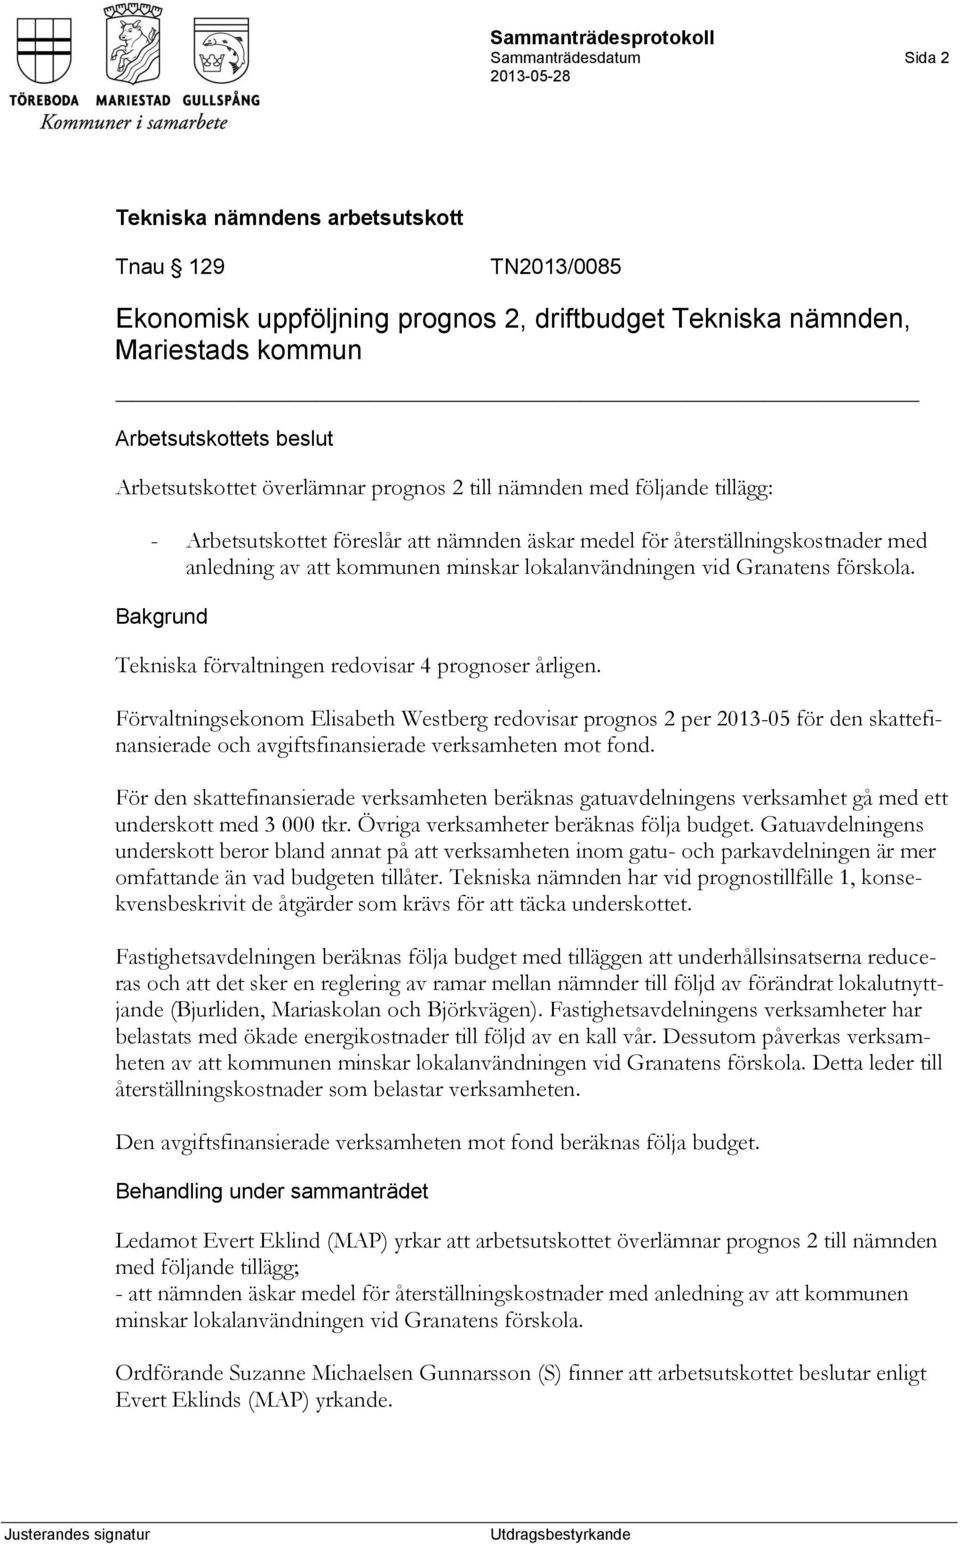 Tekniska förvaltningen redovisar 4 prognoser årligen. Förvaltningsekonom Elisabeth Westberg redovisar prognos 2 per 2013-05 för den skattefinansierade och avgiftsfinansierade verksamheten mot fond.